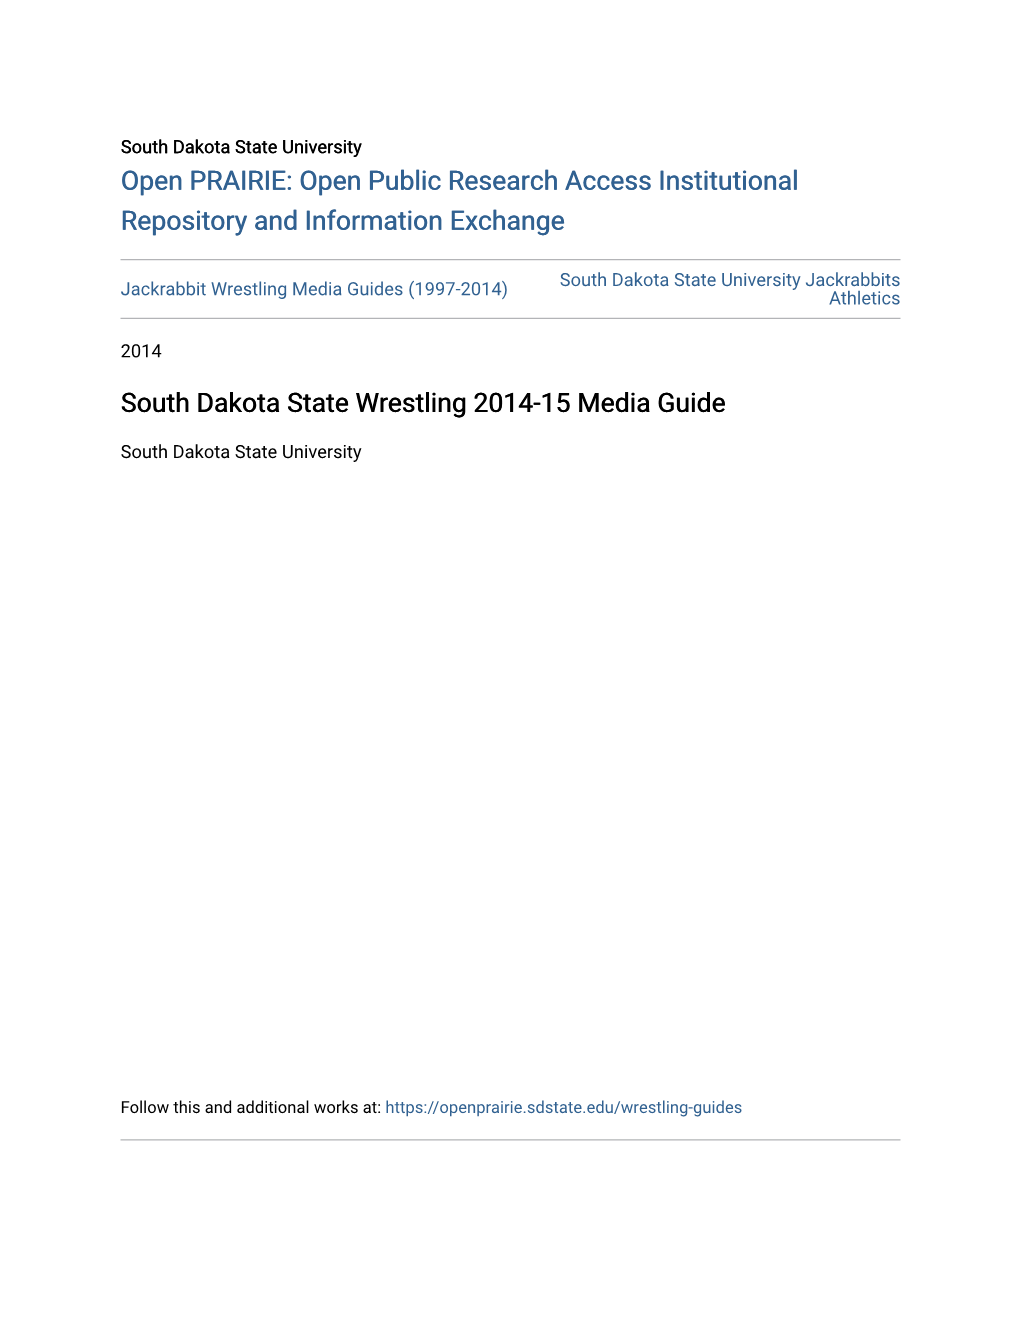 South Dakota State Wrestling 2014-15 Media Guide